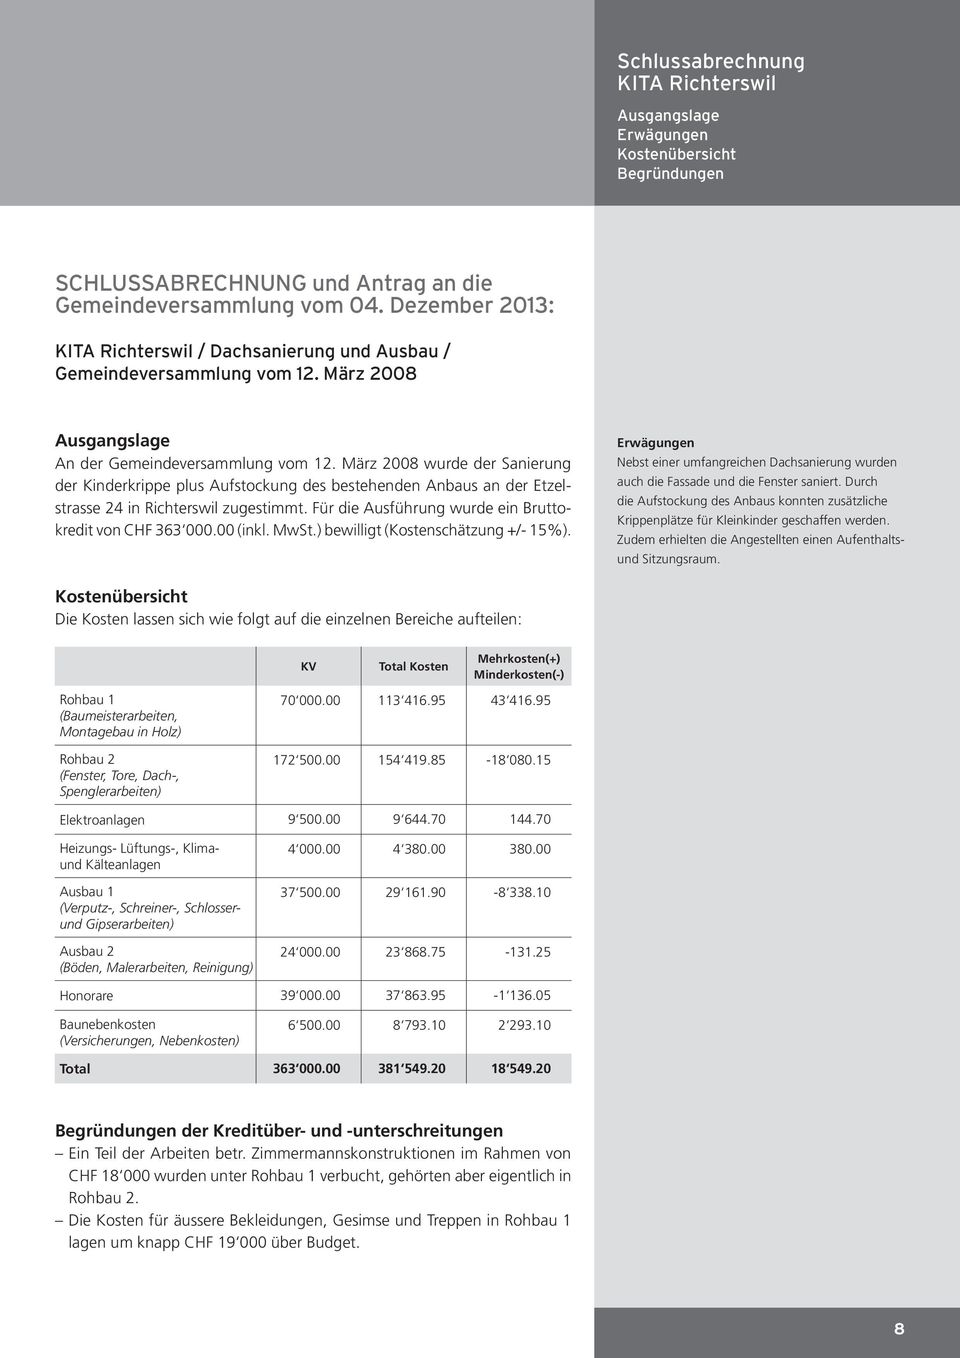 März 2008 wurde der Sanierung der Kinderkrippe plus Aufstockung des bestehenden Anbaus an der Etzelstrasse 24 in Richterswil zugestimmt. Für die Ausführung wurde ein Bruttokredit von CHF 363 000.